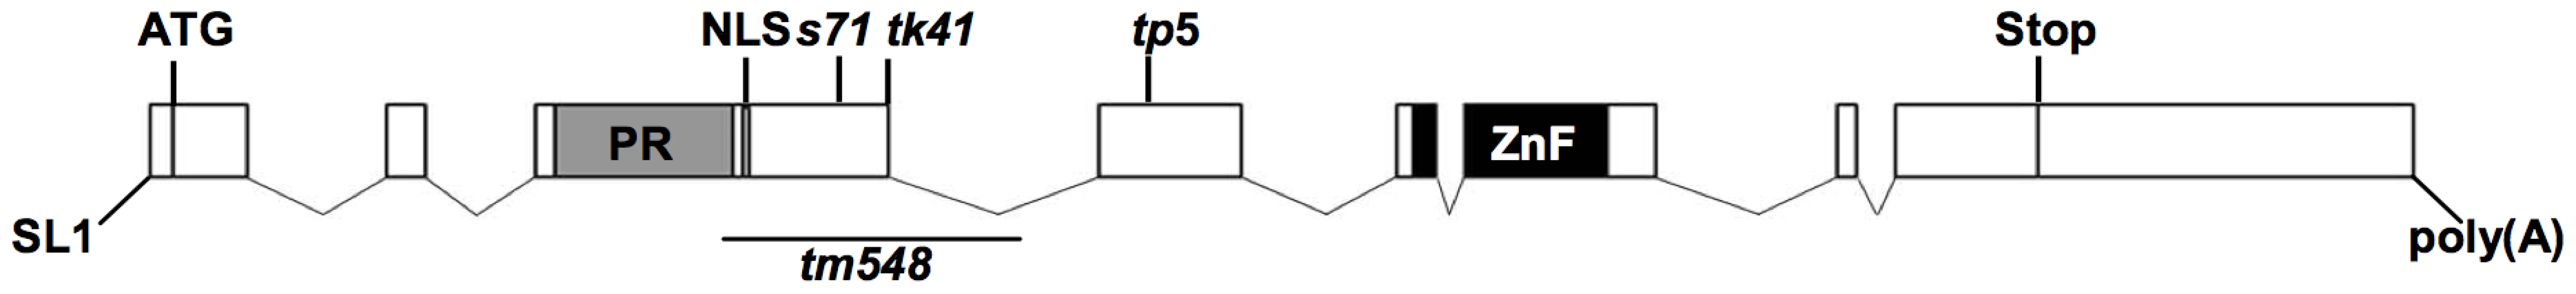 Gene structure of <i>blmp-1</i>.